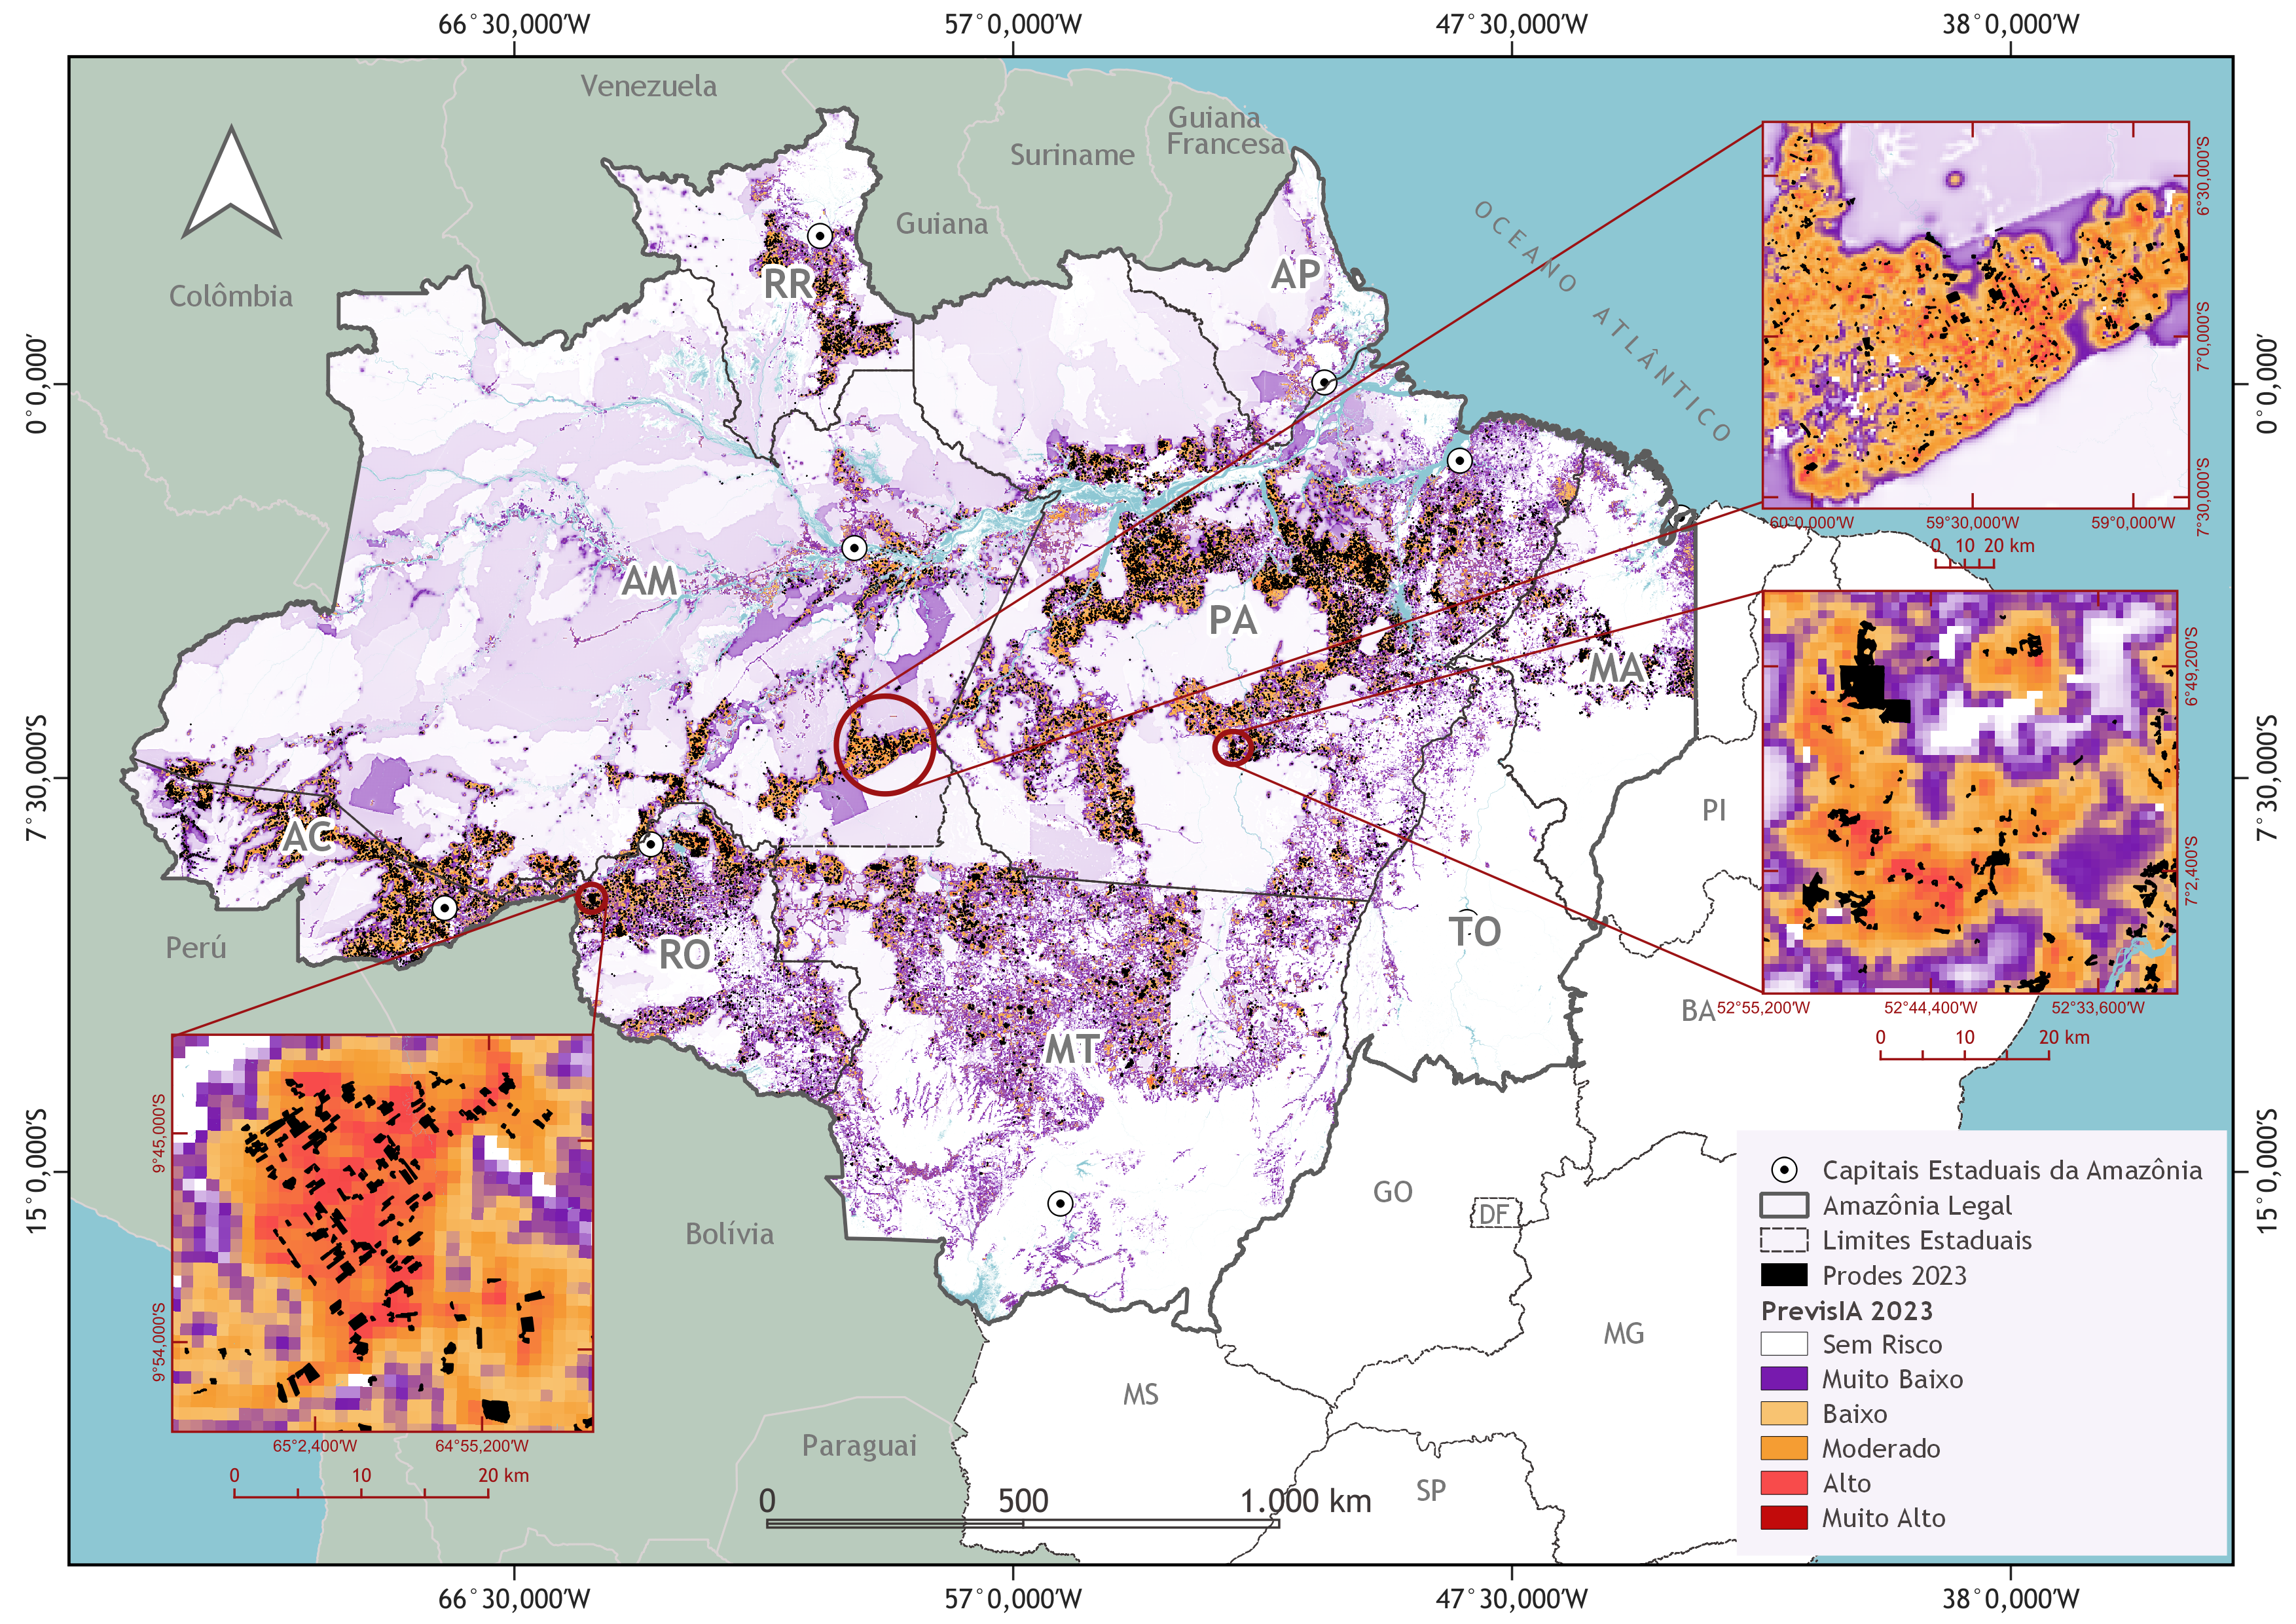 previsia prodes Amz 2023 - Inteligência artificial aponta 5 mil km² sob risco médio, alto ou muito alto de desmatamento na Amazônia em 2024